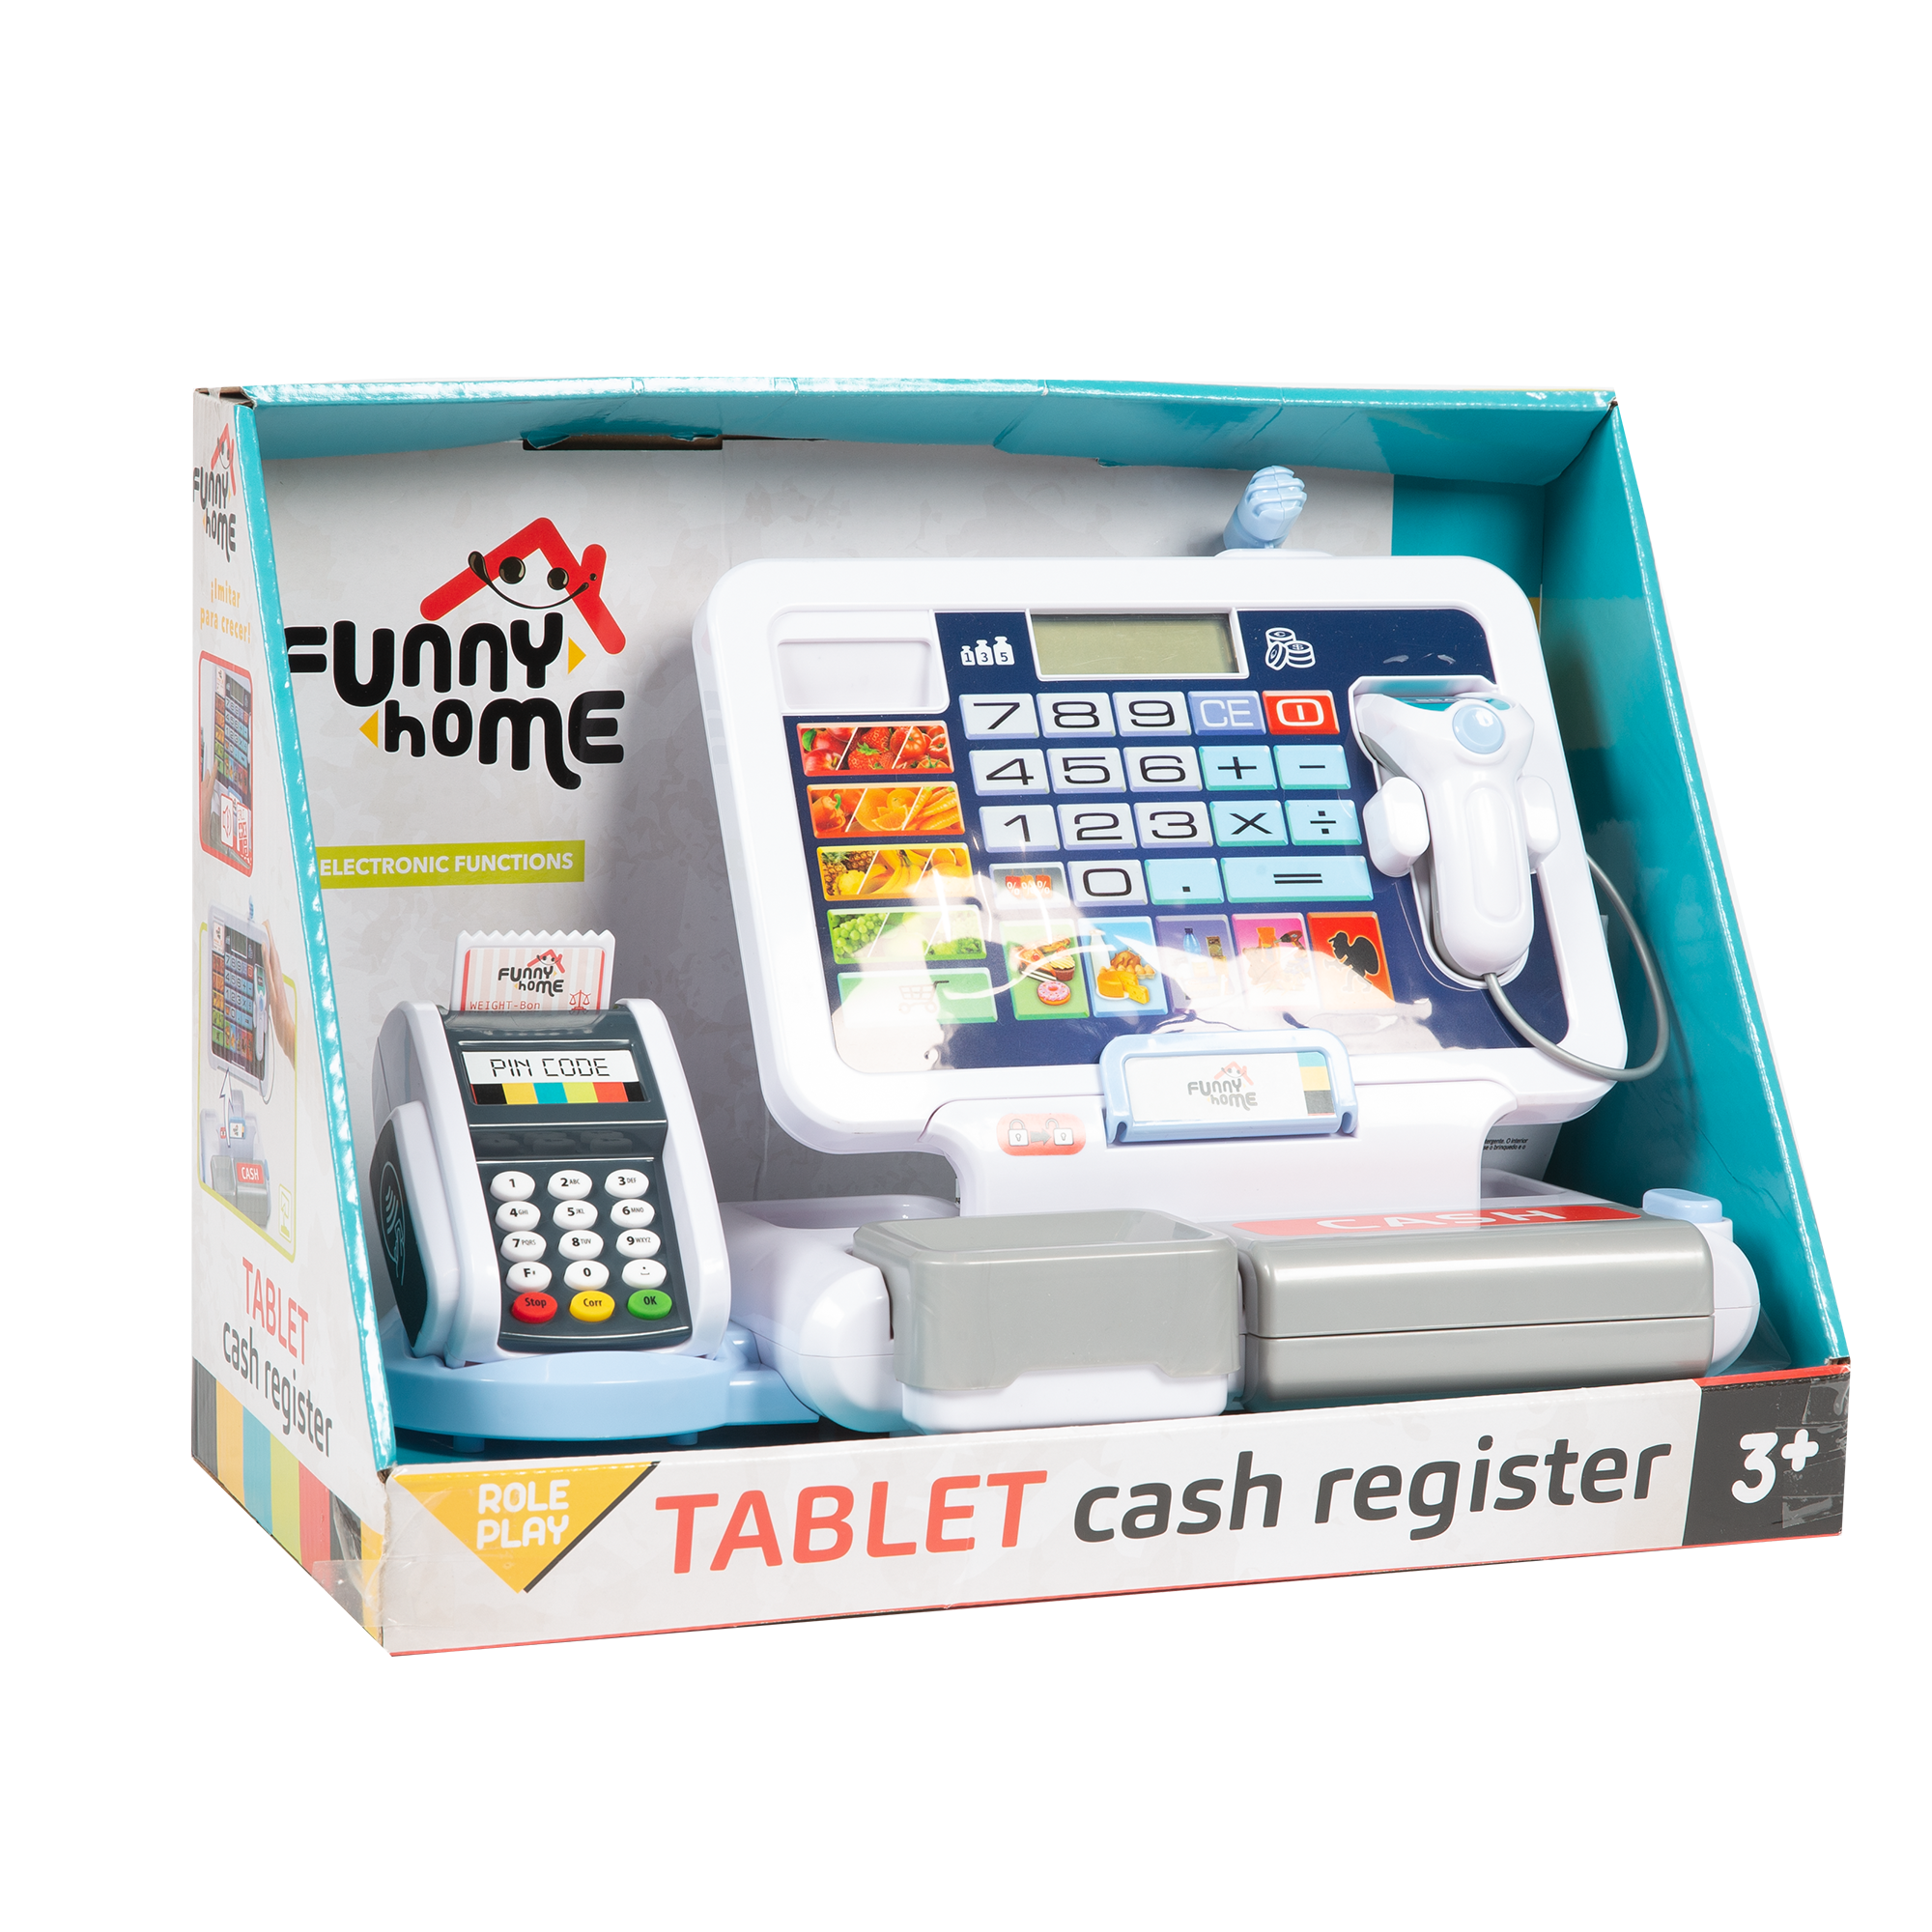 Tablet cash register - FUNNY HOME